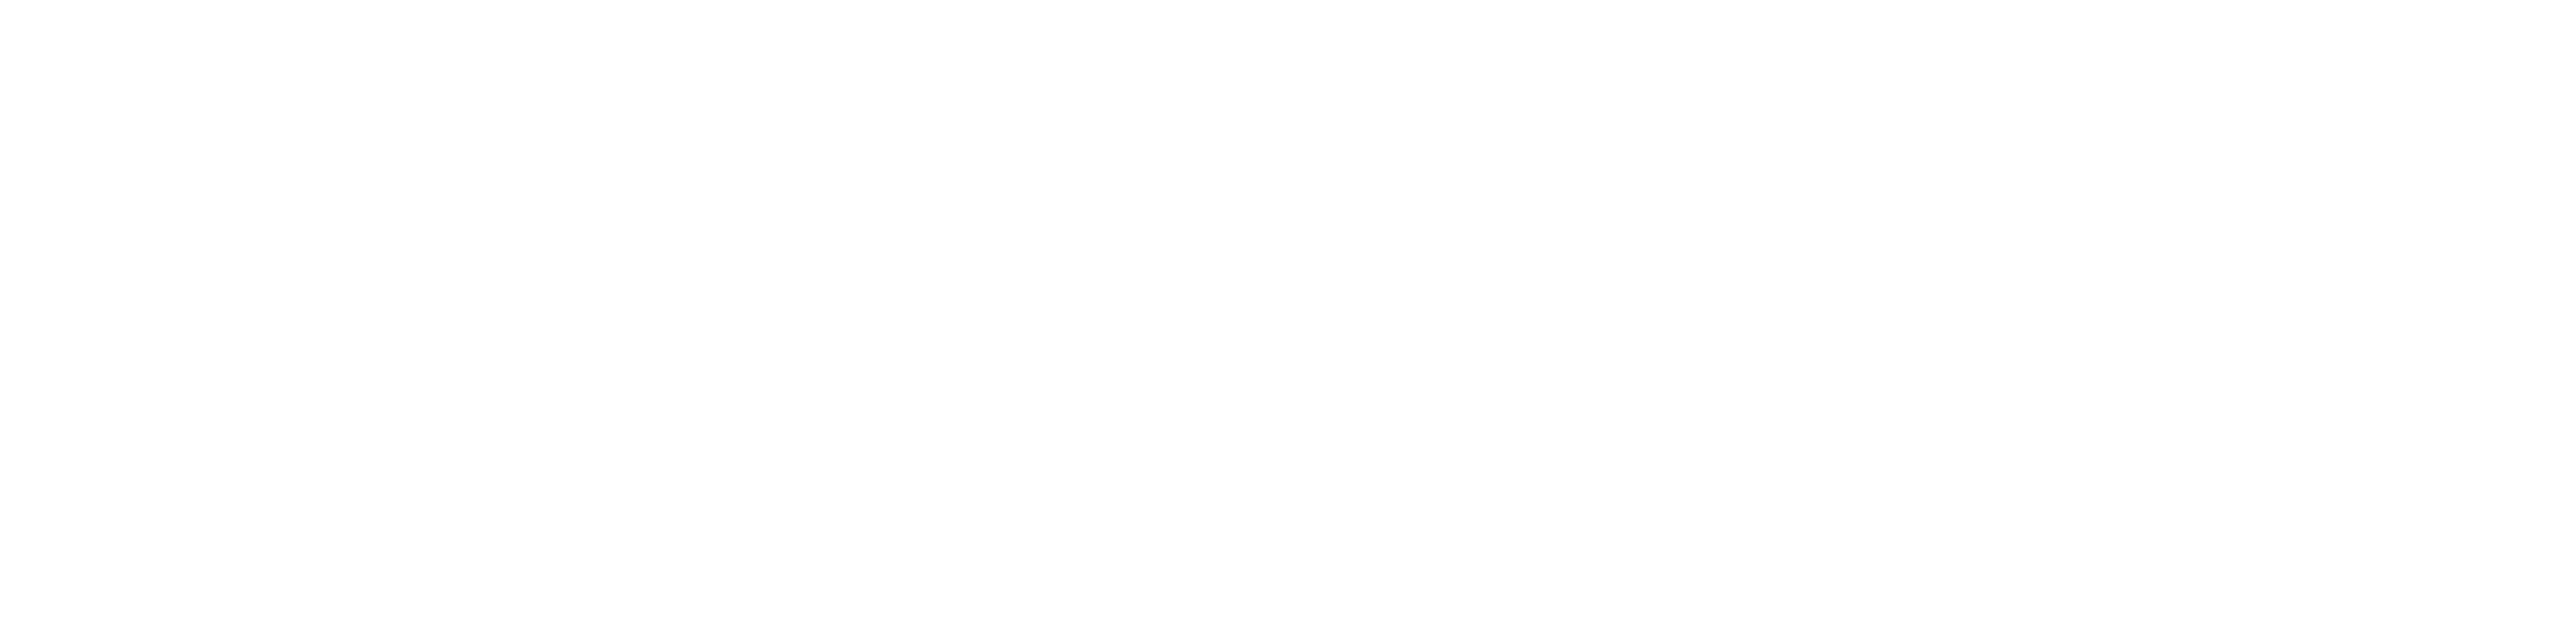 bsc news logo